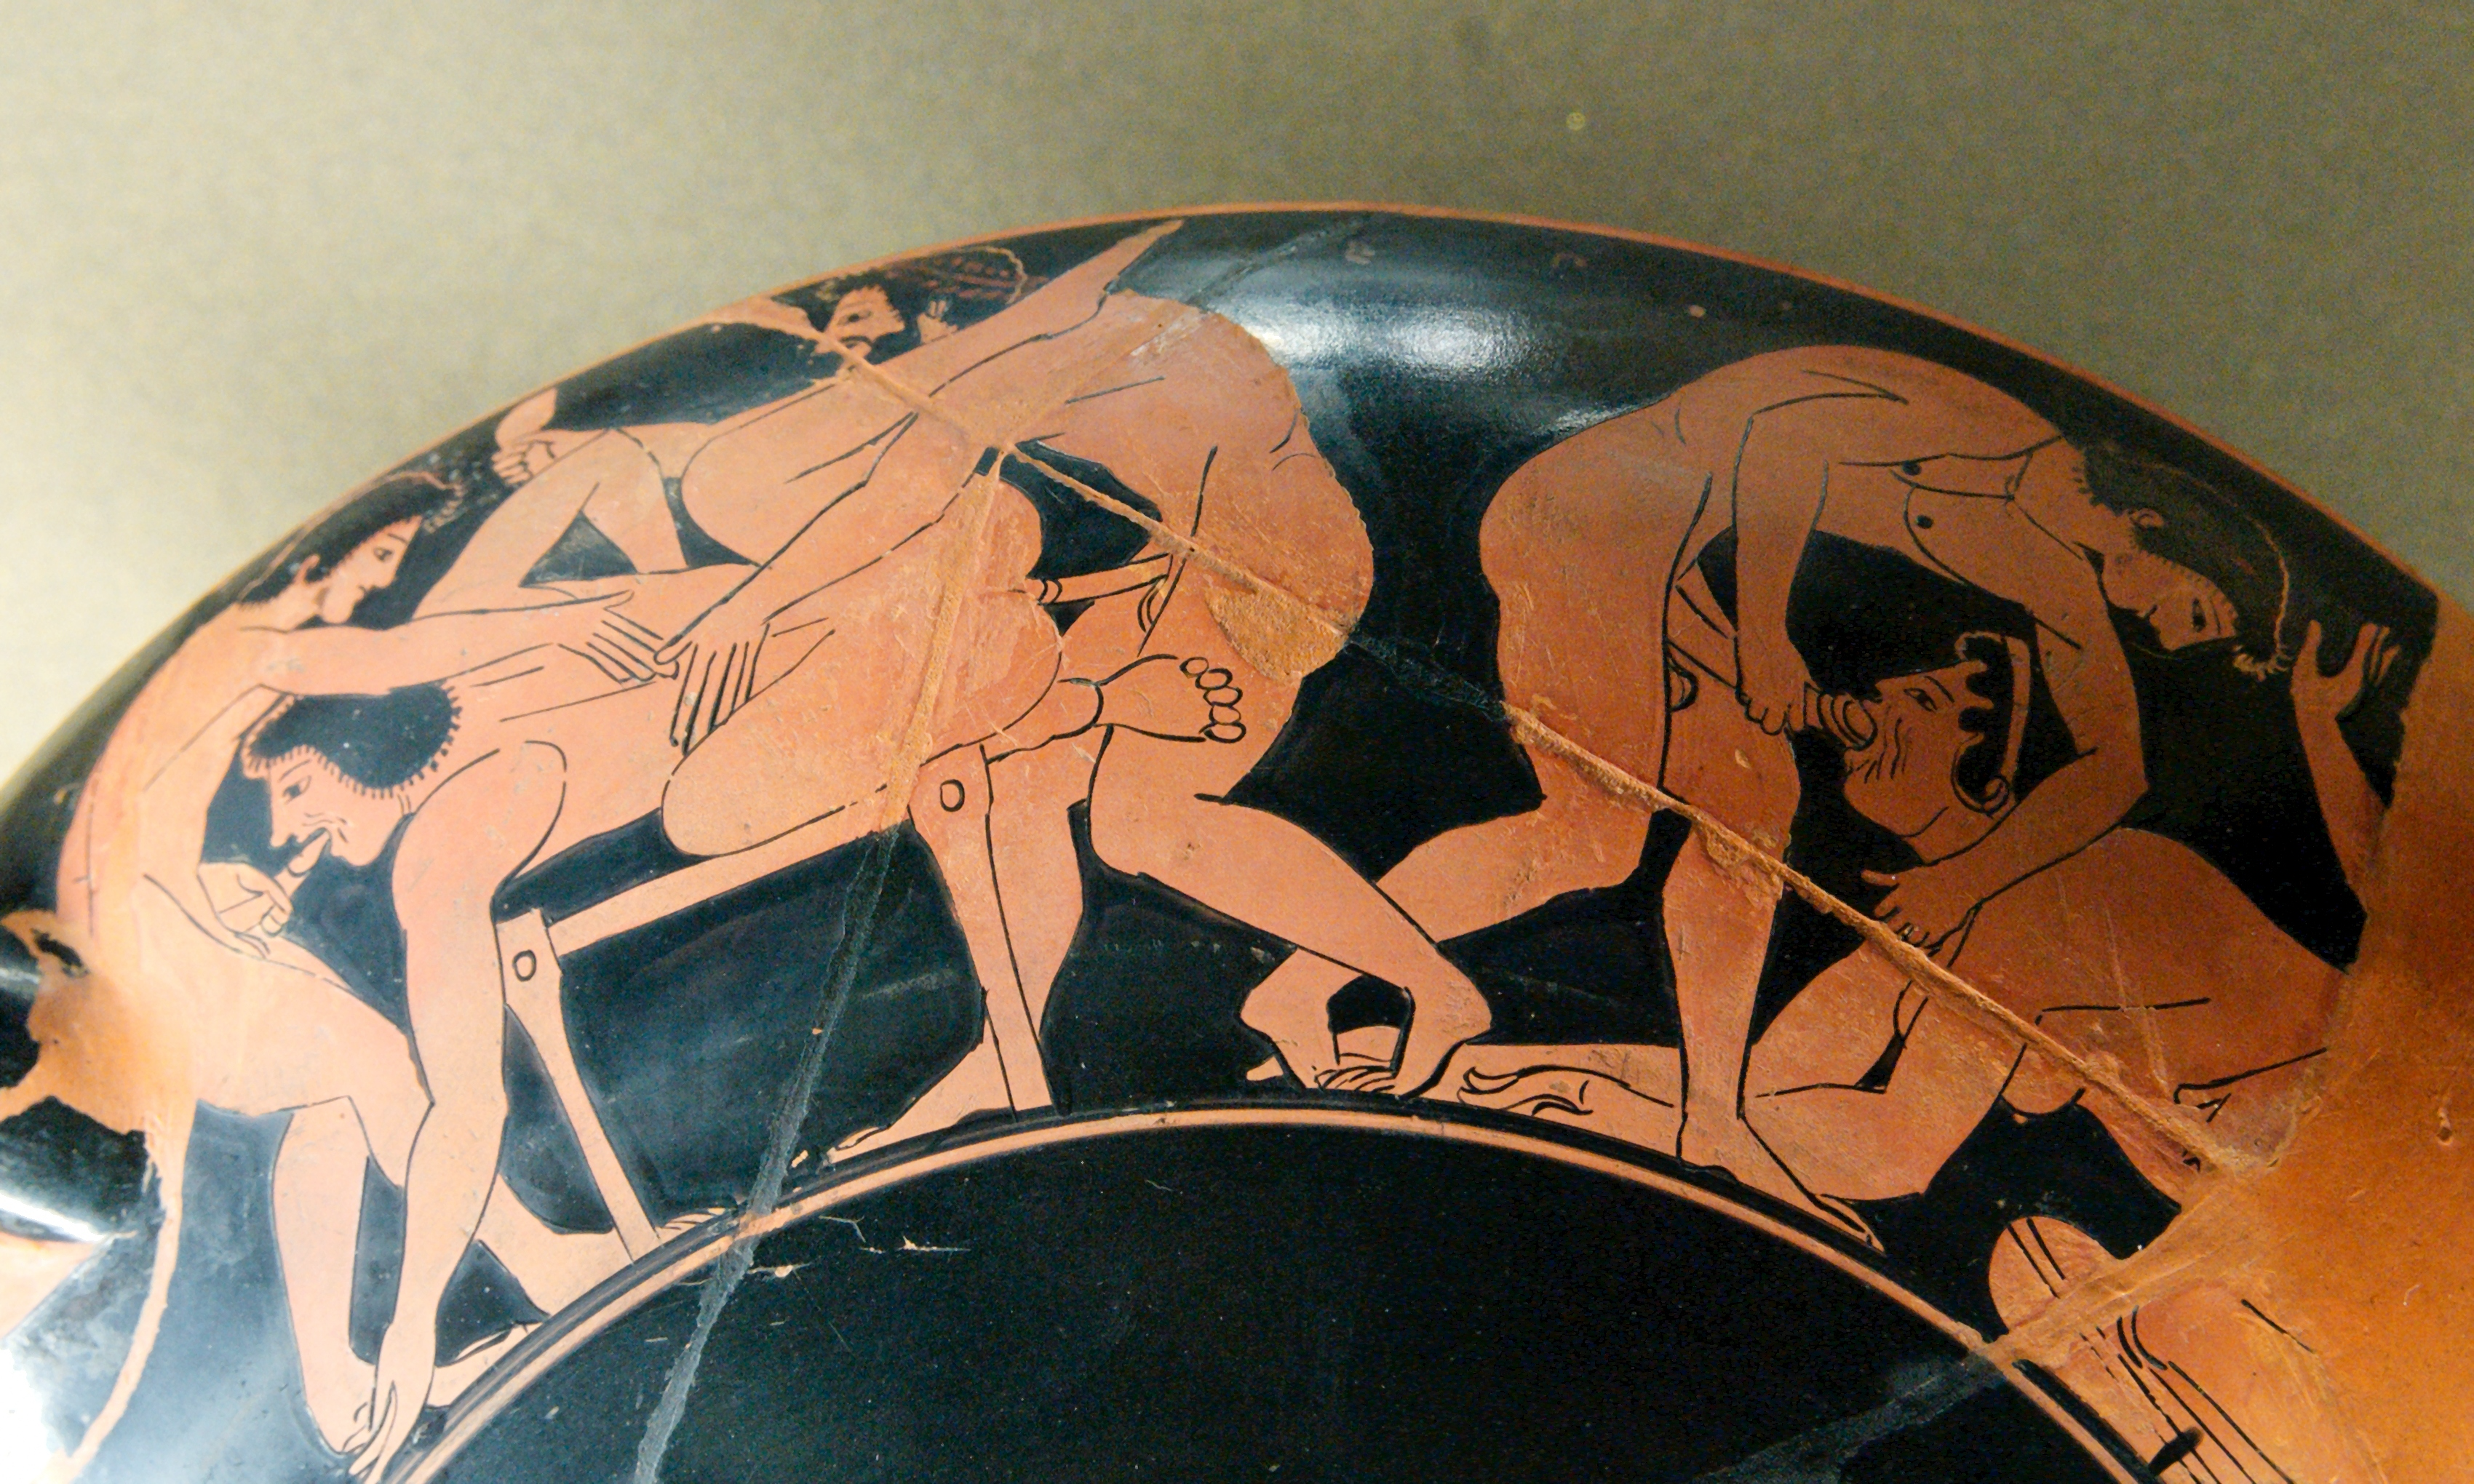 Painter of Pédieus (?), Erotic scene on the rim of an Attic red-figure kylix (wine cup), terracotta, ca. 510 B.C.E. (Musée du Louvre, Paris). Photo by Marie-Lan Nguyen, CC BY 3.0.